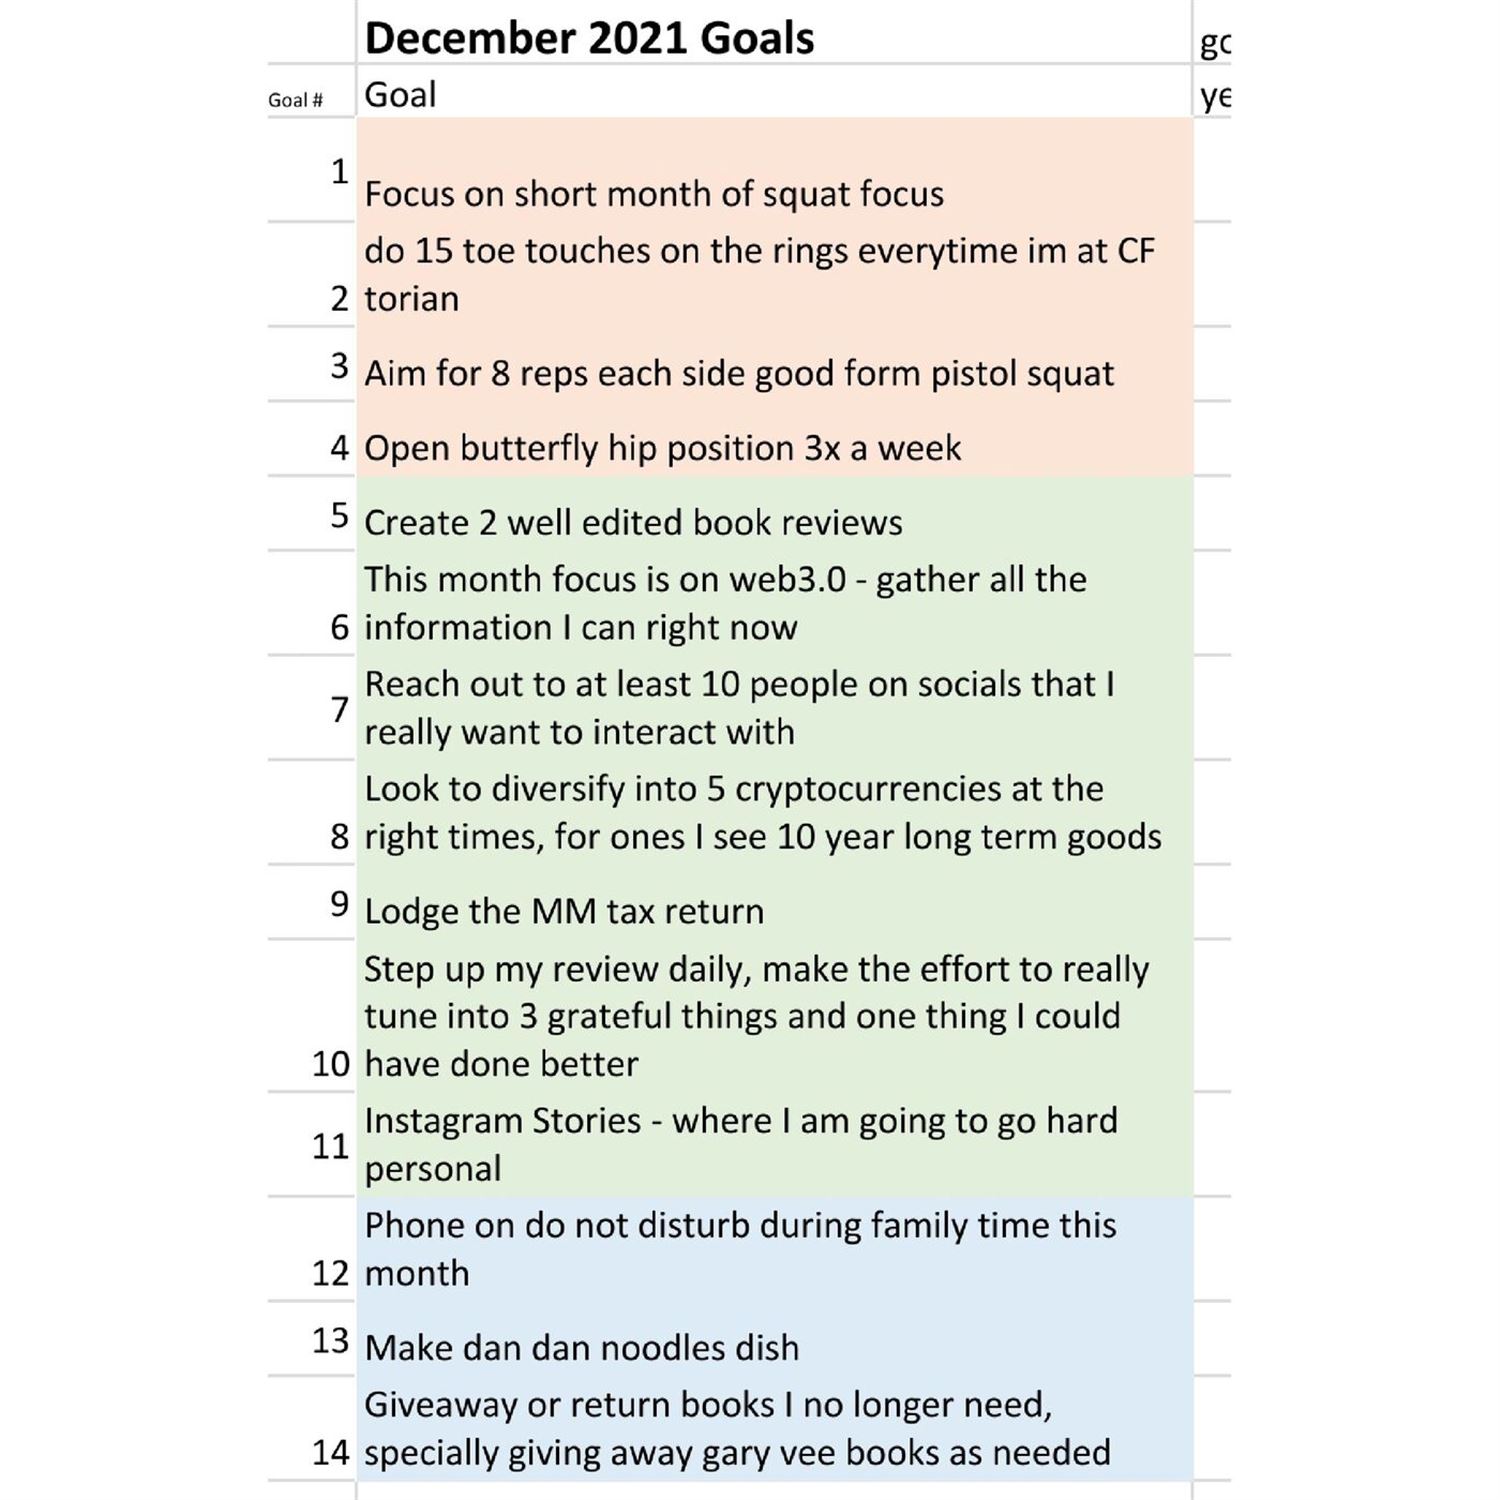 Juan's Soul December goals